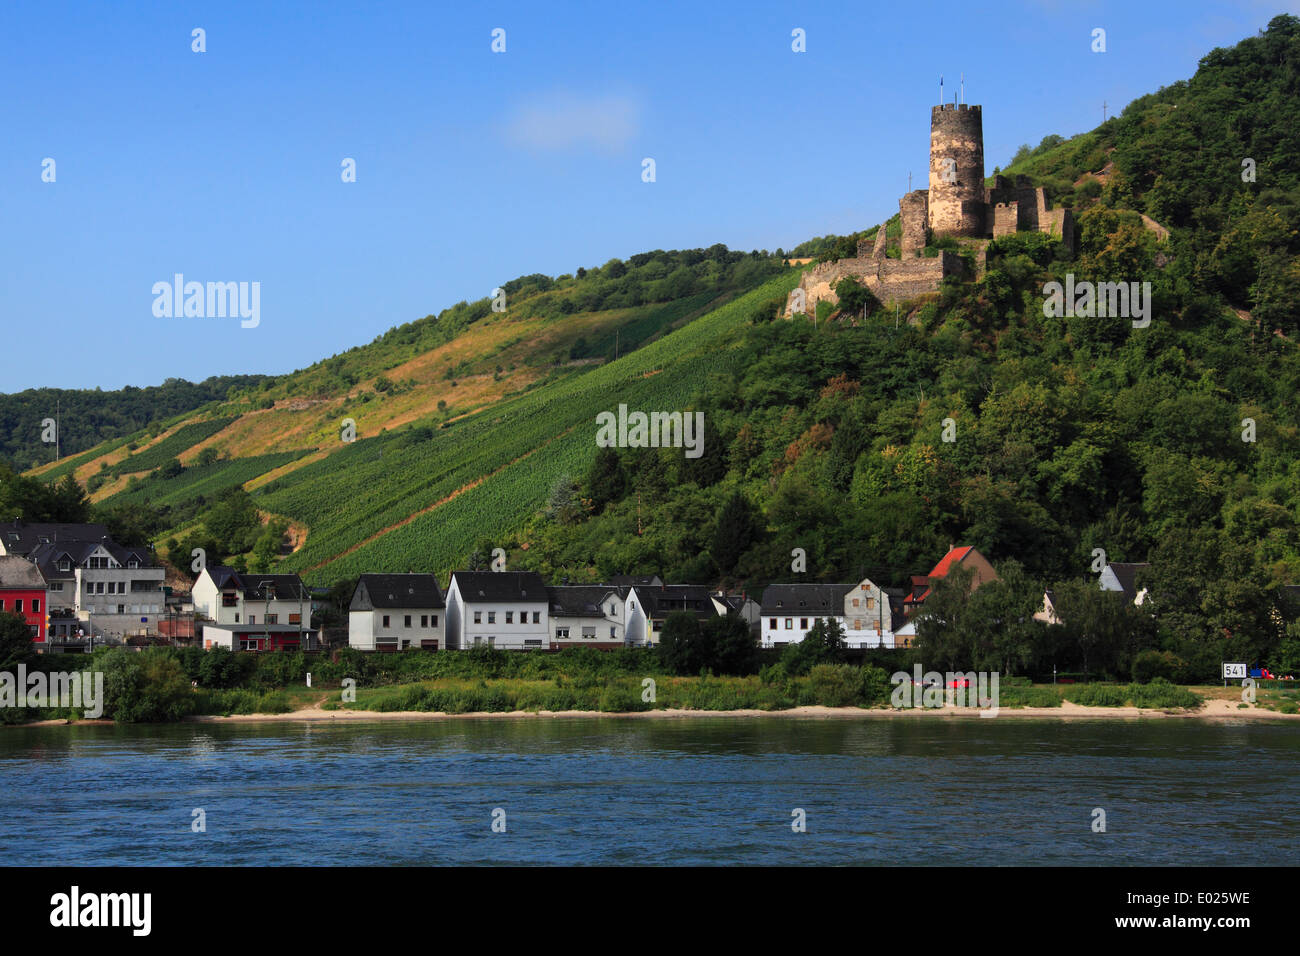 Foto von Furstenberg Burgruine, über Rheindiebach, mit Weinbergen, am Rhein, Deutschland Stockfoto